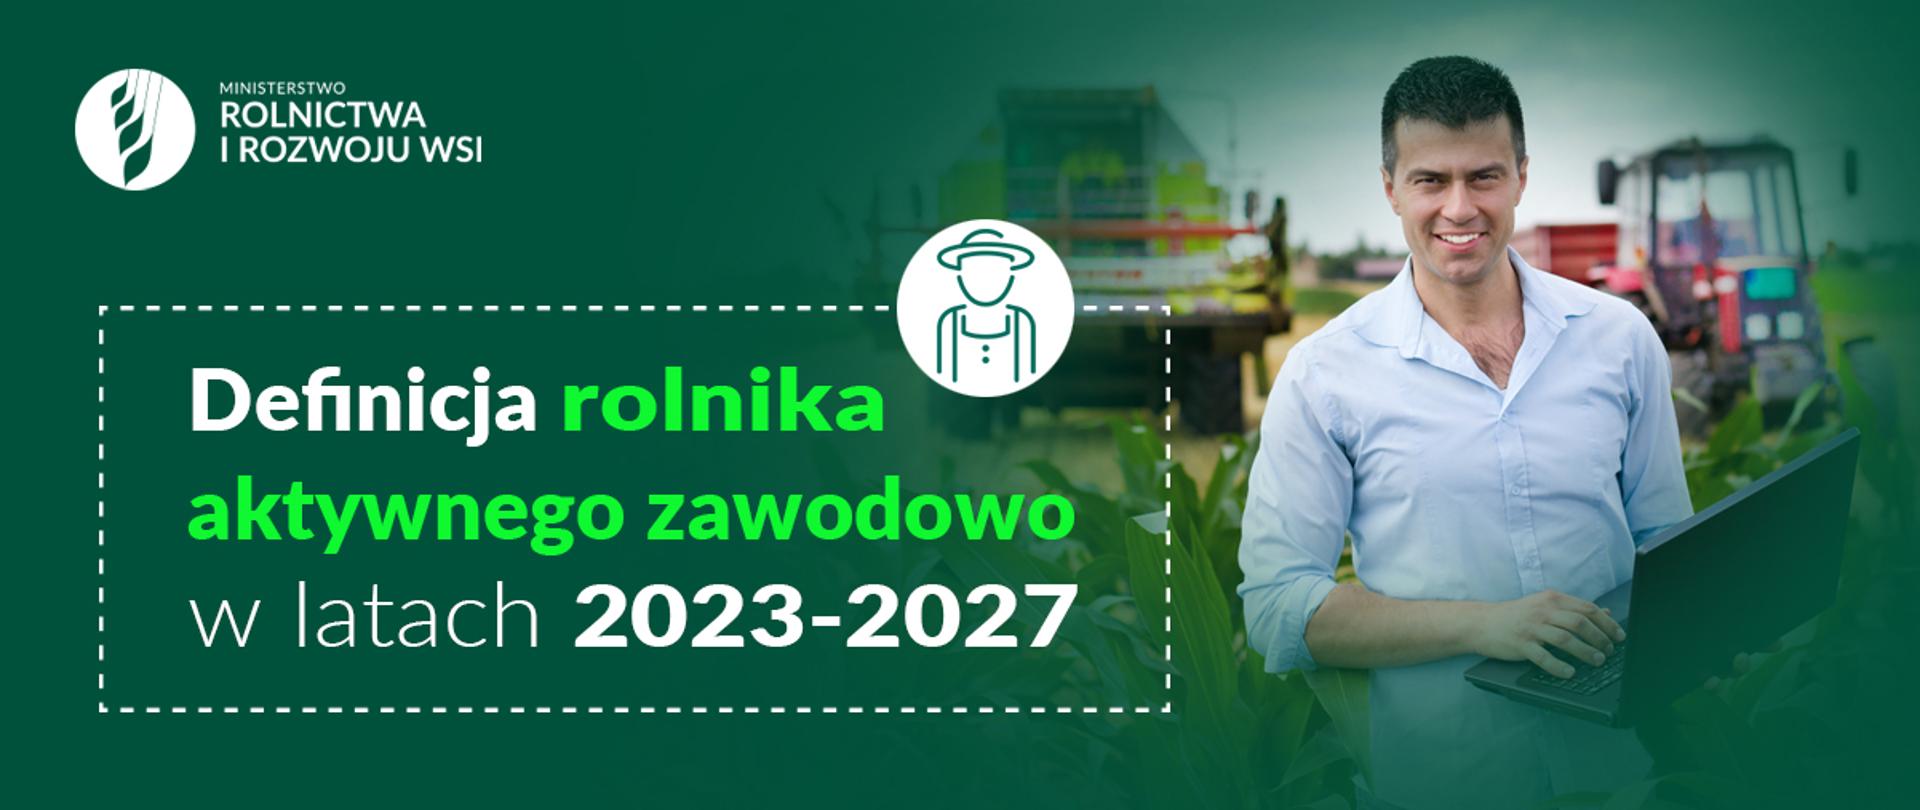 Infografika do komunikatu "Definicja rolnika aktywnego zawodowo w latach 2023-2027".
Uśmiechnięty mężczyzna, z laptopem w rękach, stojący na tle kombajnu i ciągnika rolniczego.